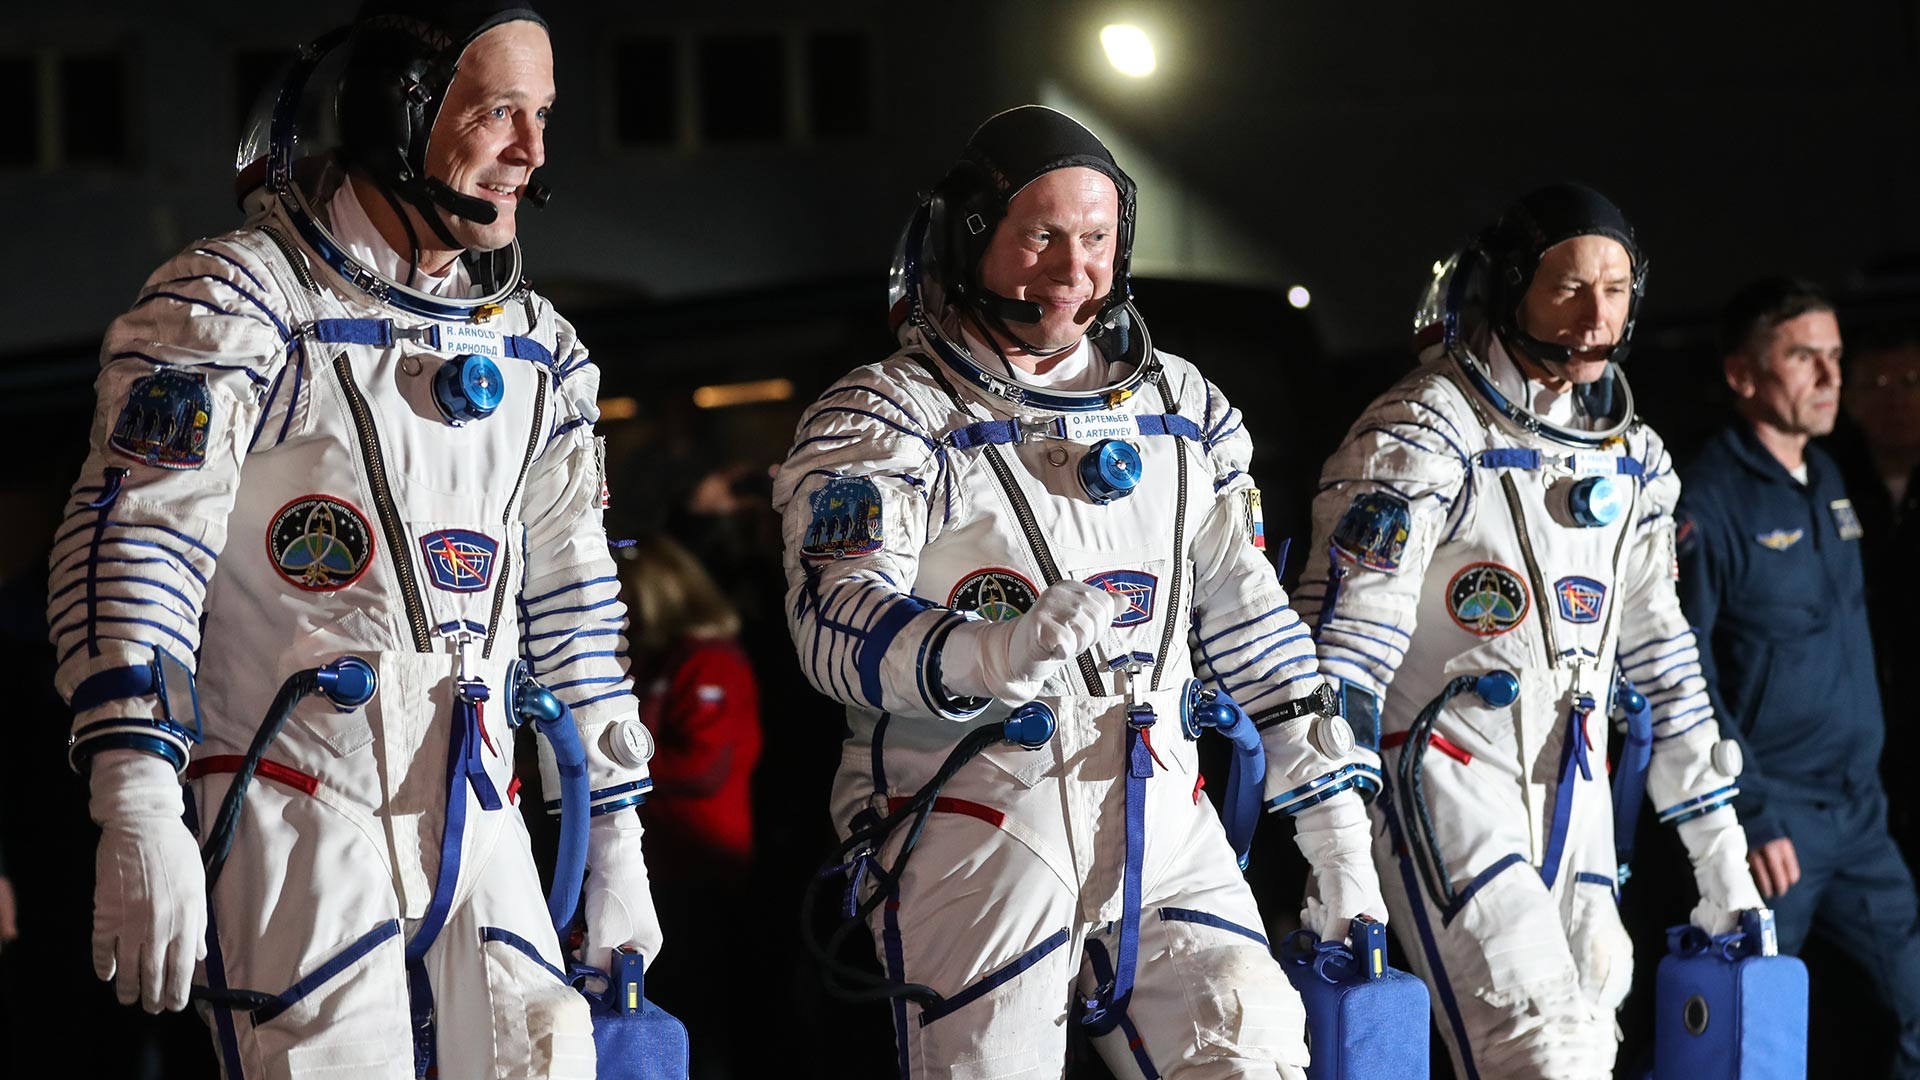 L'expédition 55/56 de l'équipage permanent de la Station spatiale internationale. L'astronaute américain Richard R. Arnold, le cosmonaute Oleg Artemyev et l'astronaute américain Andrew Feustel (de gauche à droite).